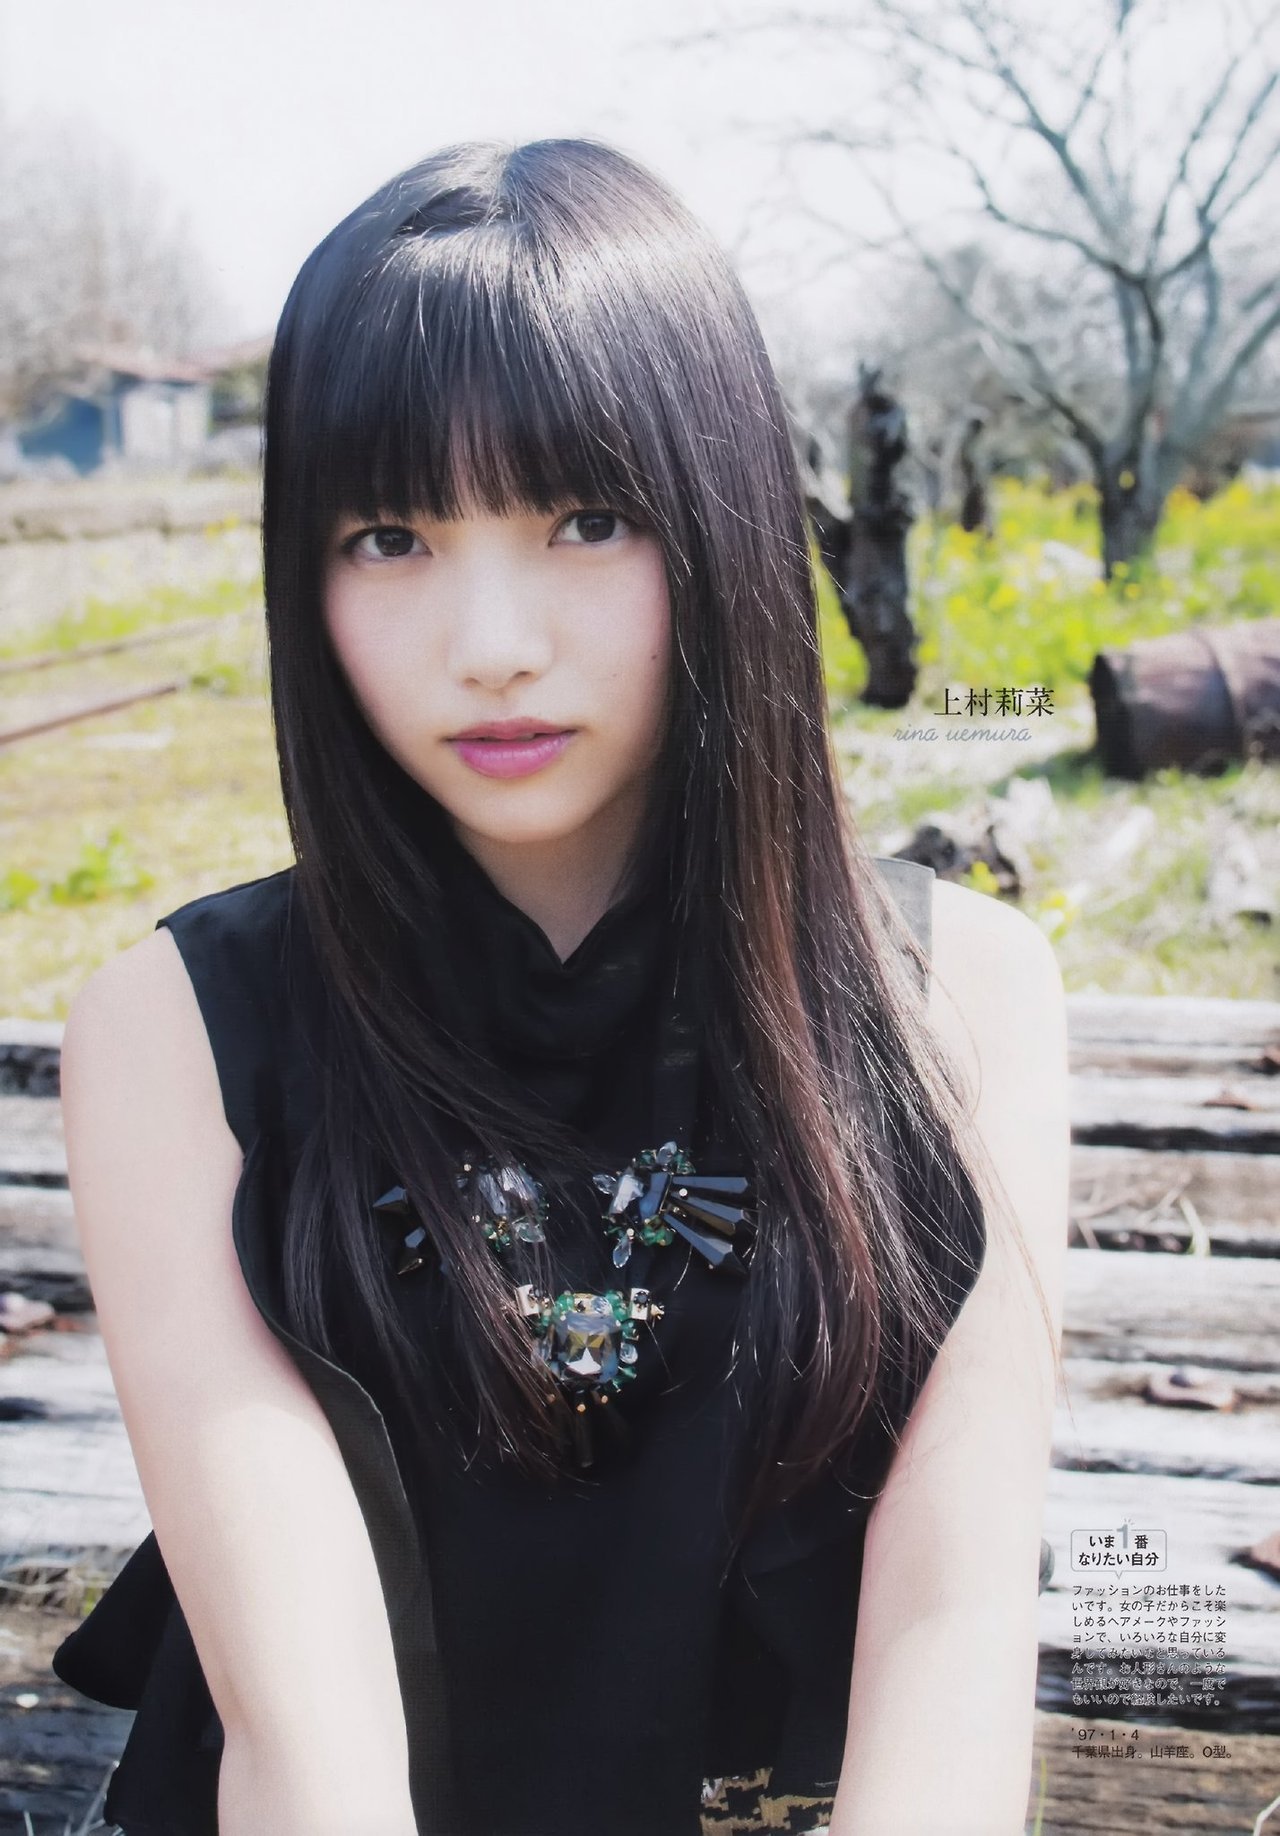 欅坂46メンバーのあだ名一覧まとめ 中国でのニックネームも Aikru アイクル かわいい女の子の情報まとめサイト